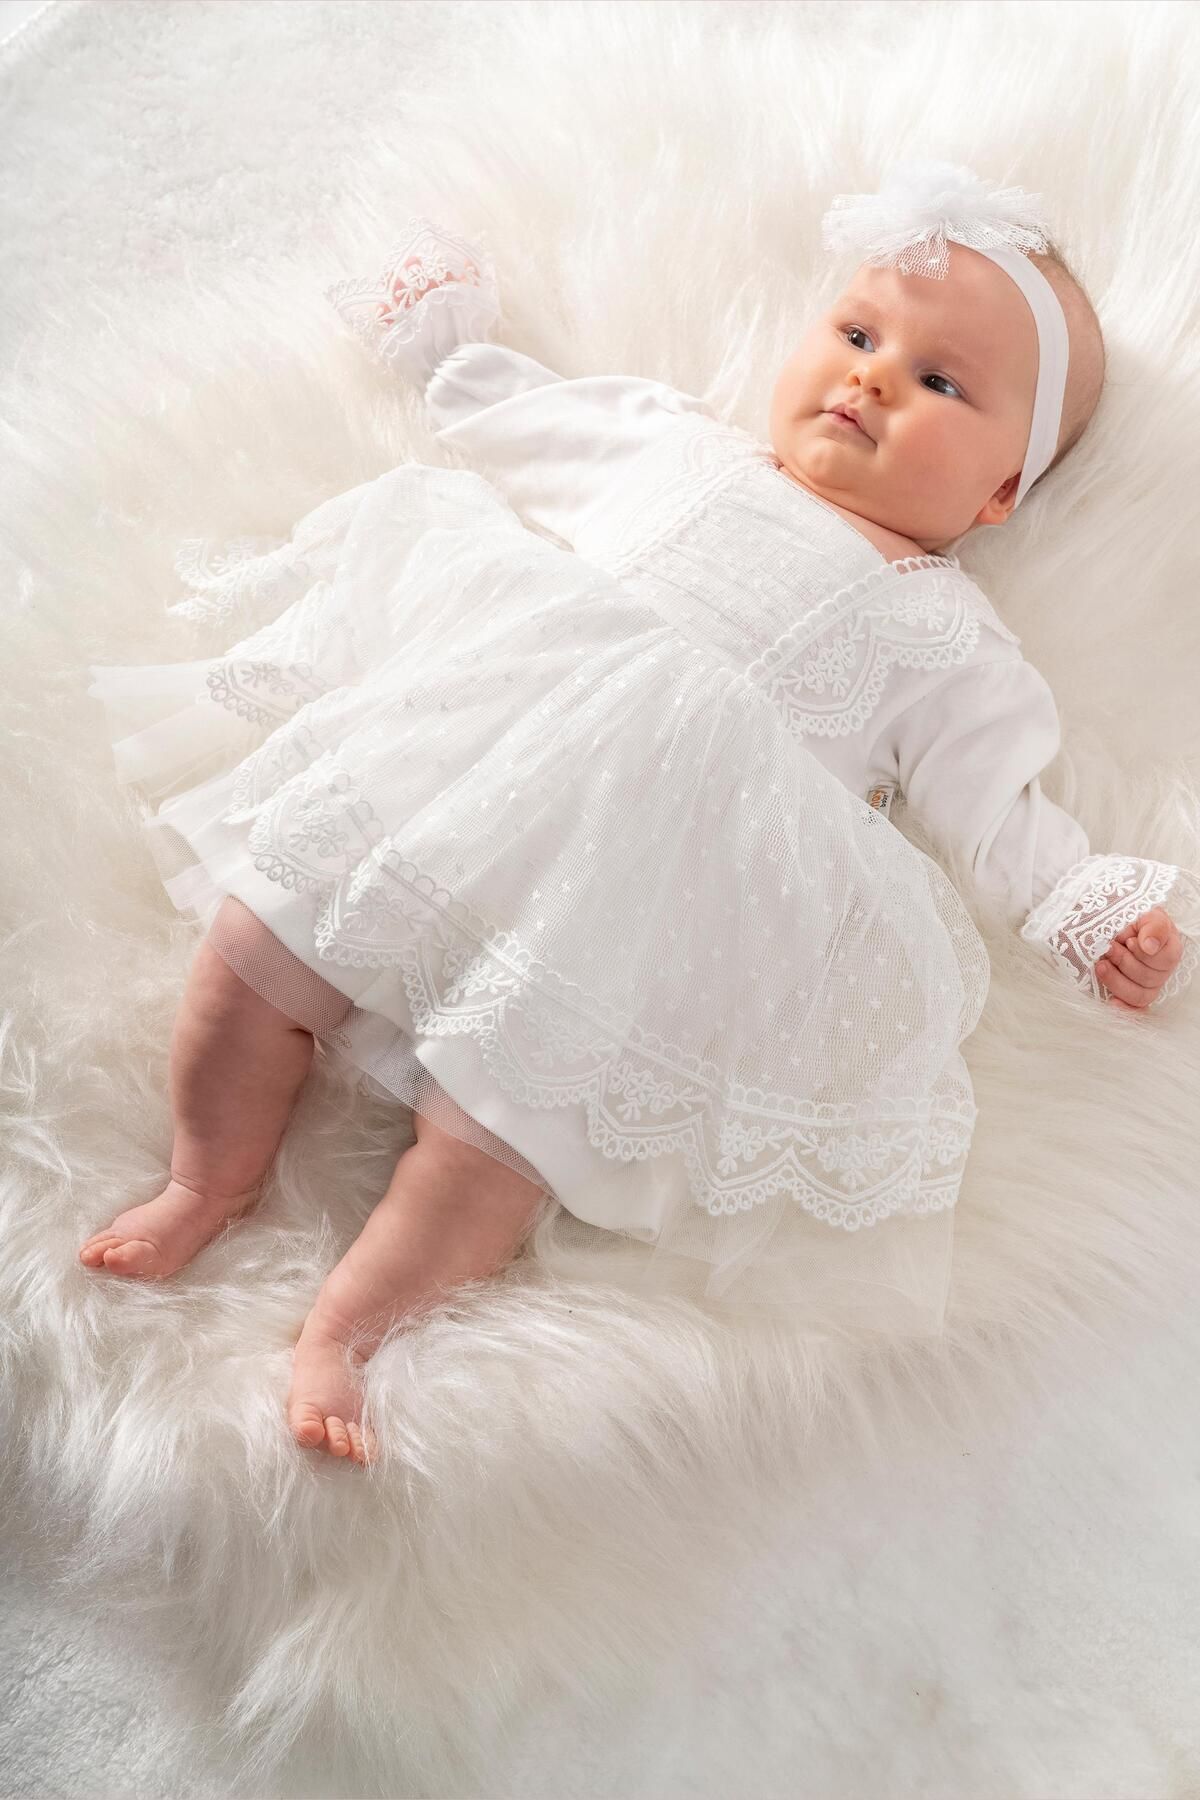 Sitilin Kız Bebek Mevlüt Elbisesi Gelinlik Fransız Dantelli Mevlit Takımı Bebek Mevlütlük Seti STL6565